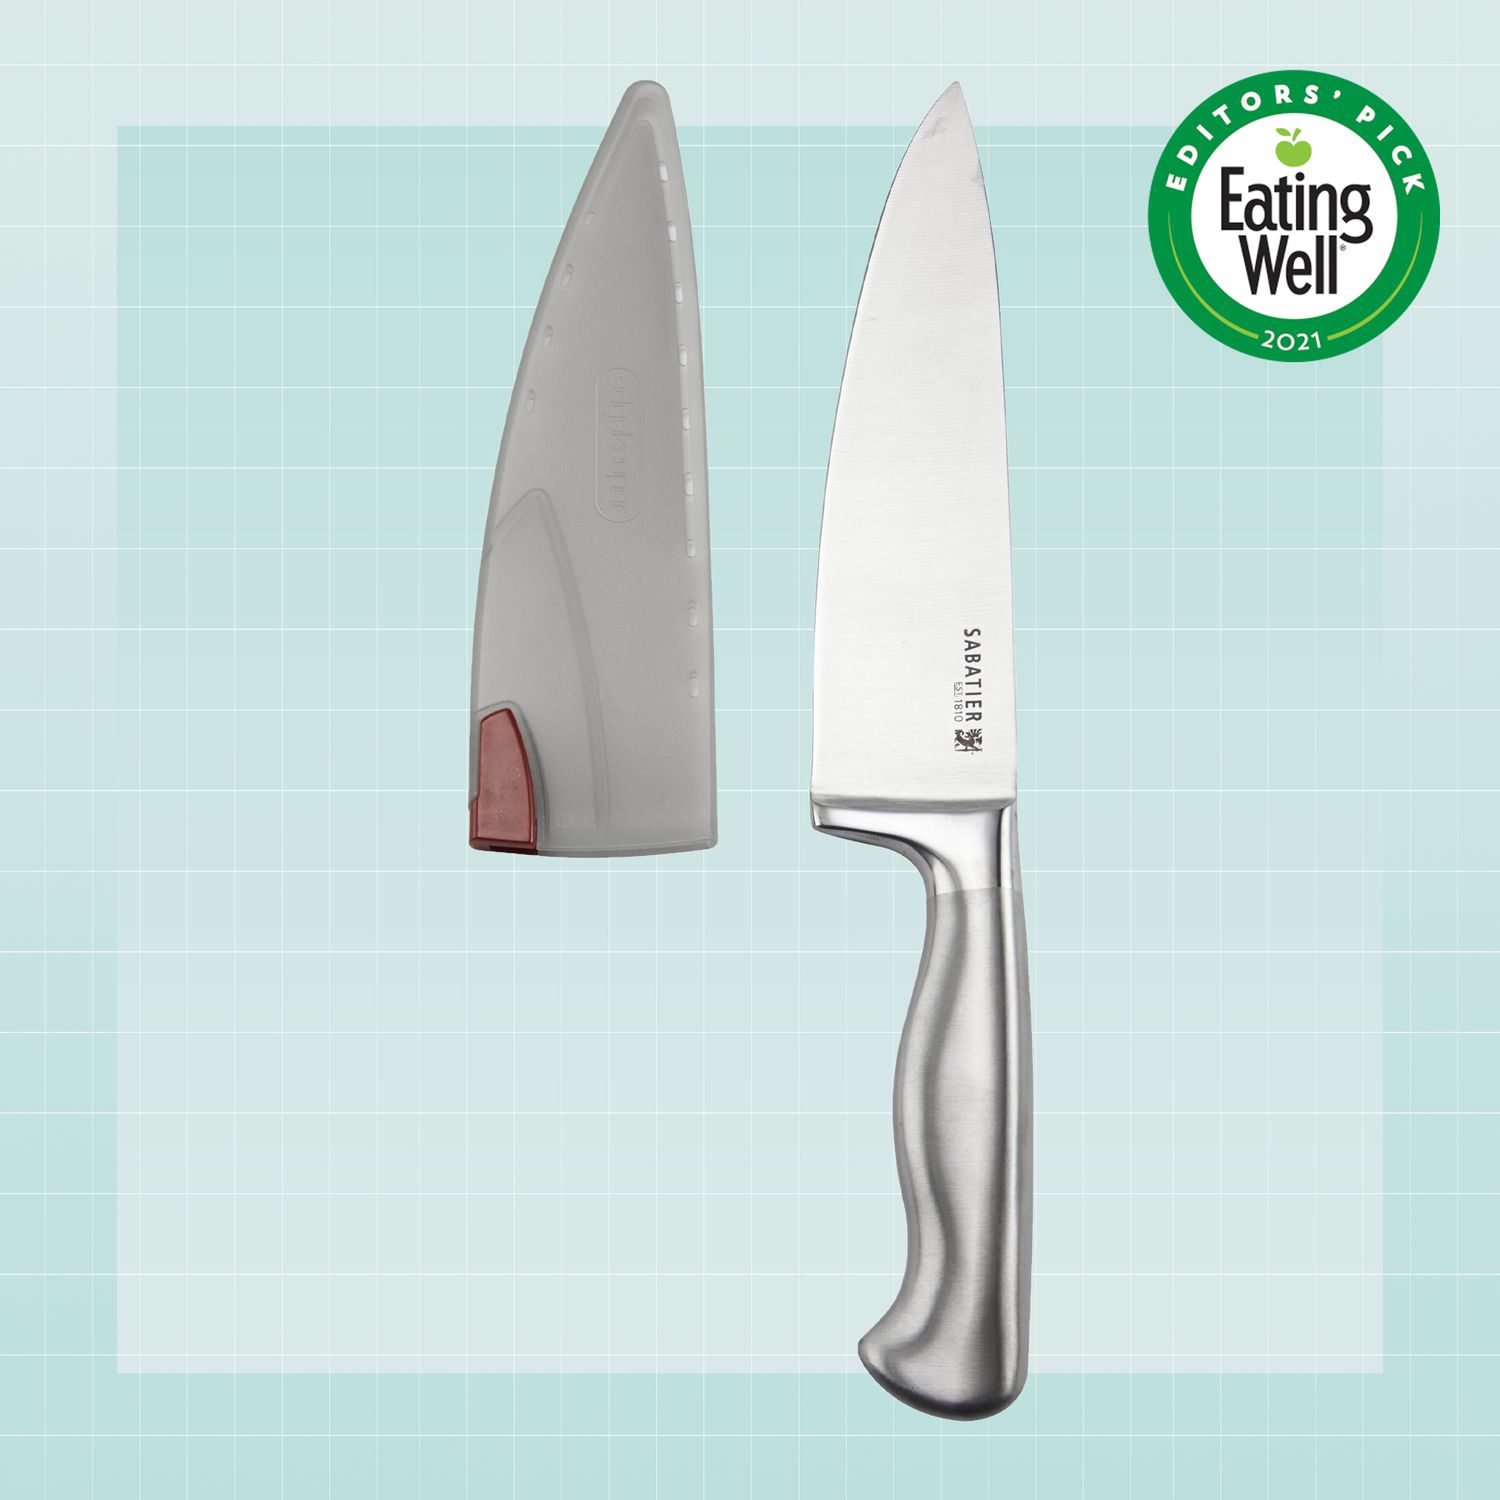 Sabatier knife on a designed background